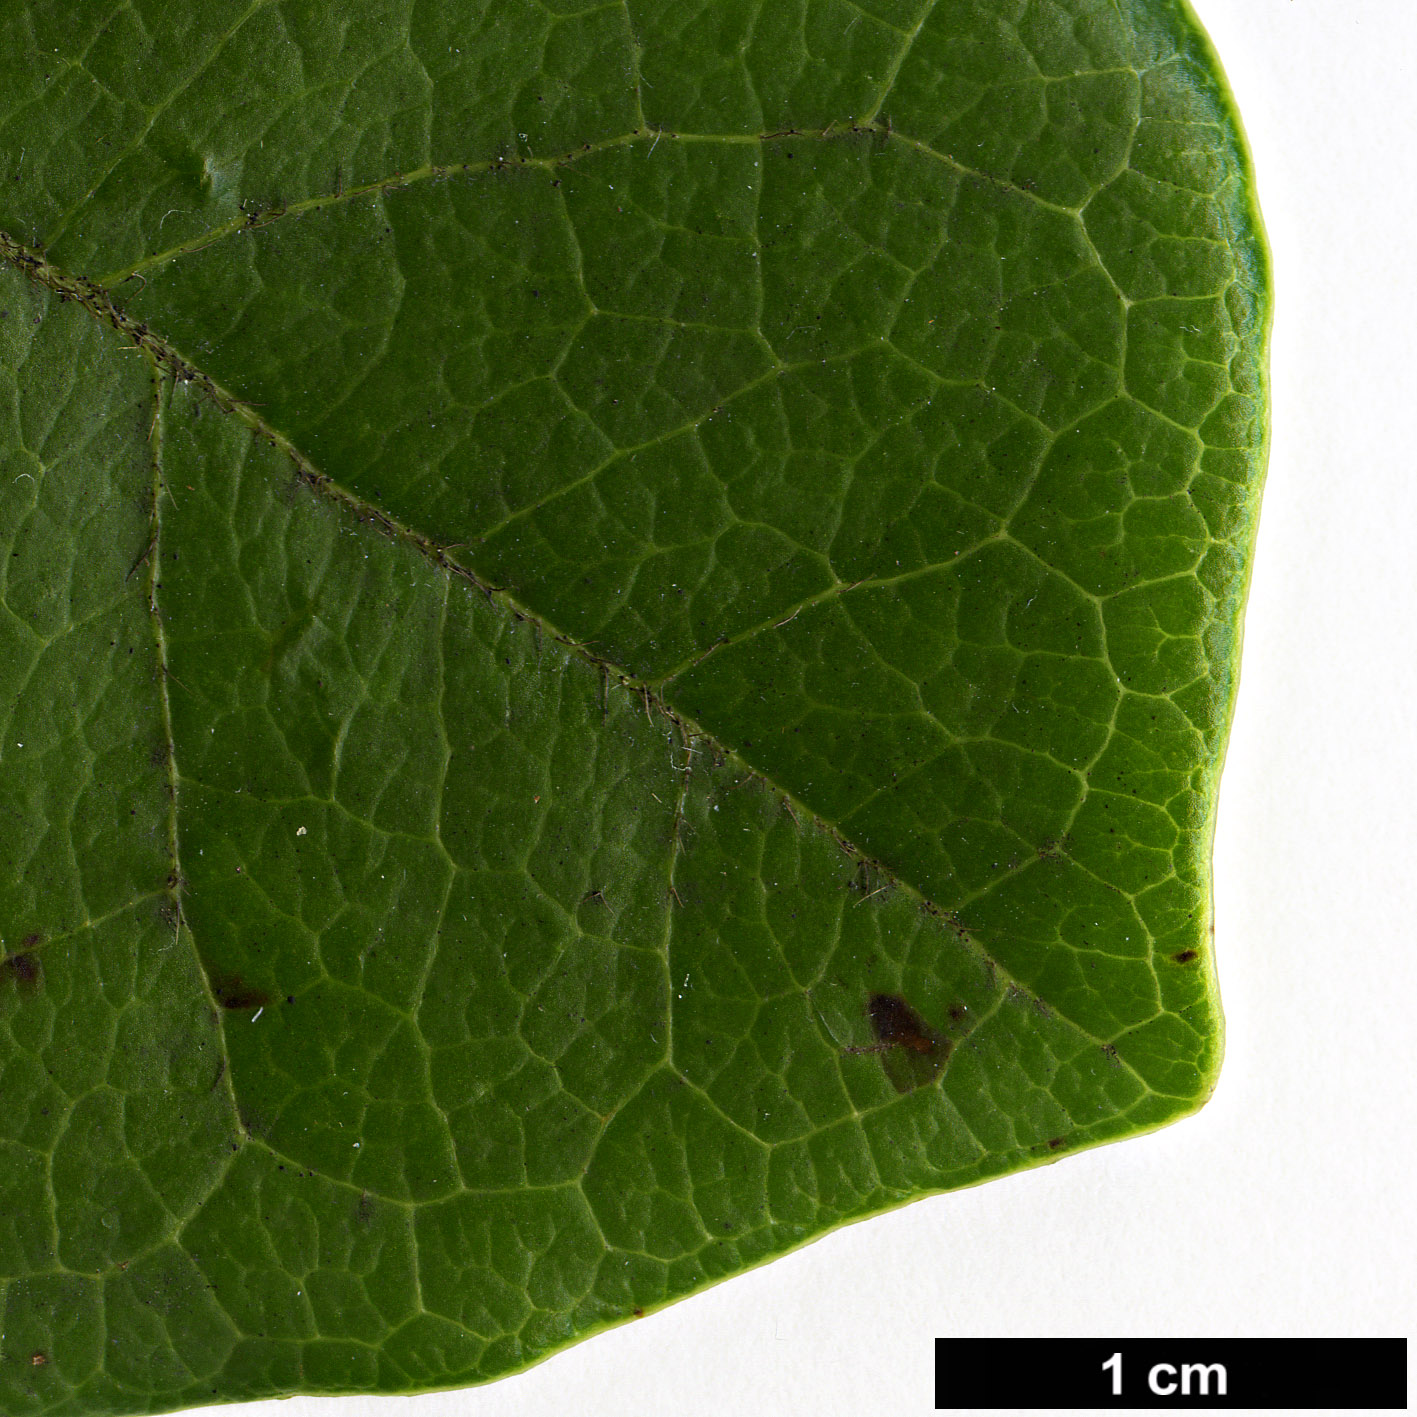 High resolution image: Family: Adoxaceae - Genus: Viburnum - Taxon: treleasei